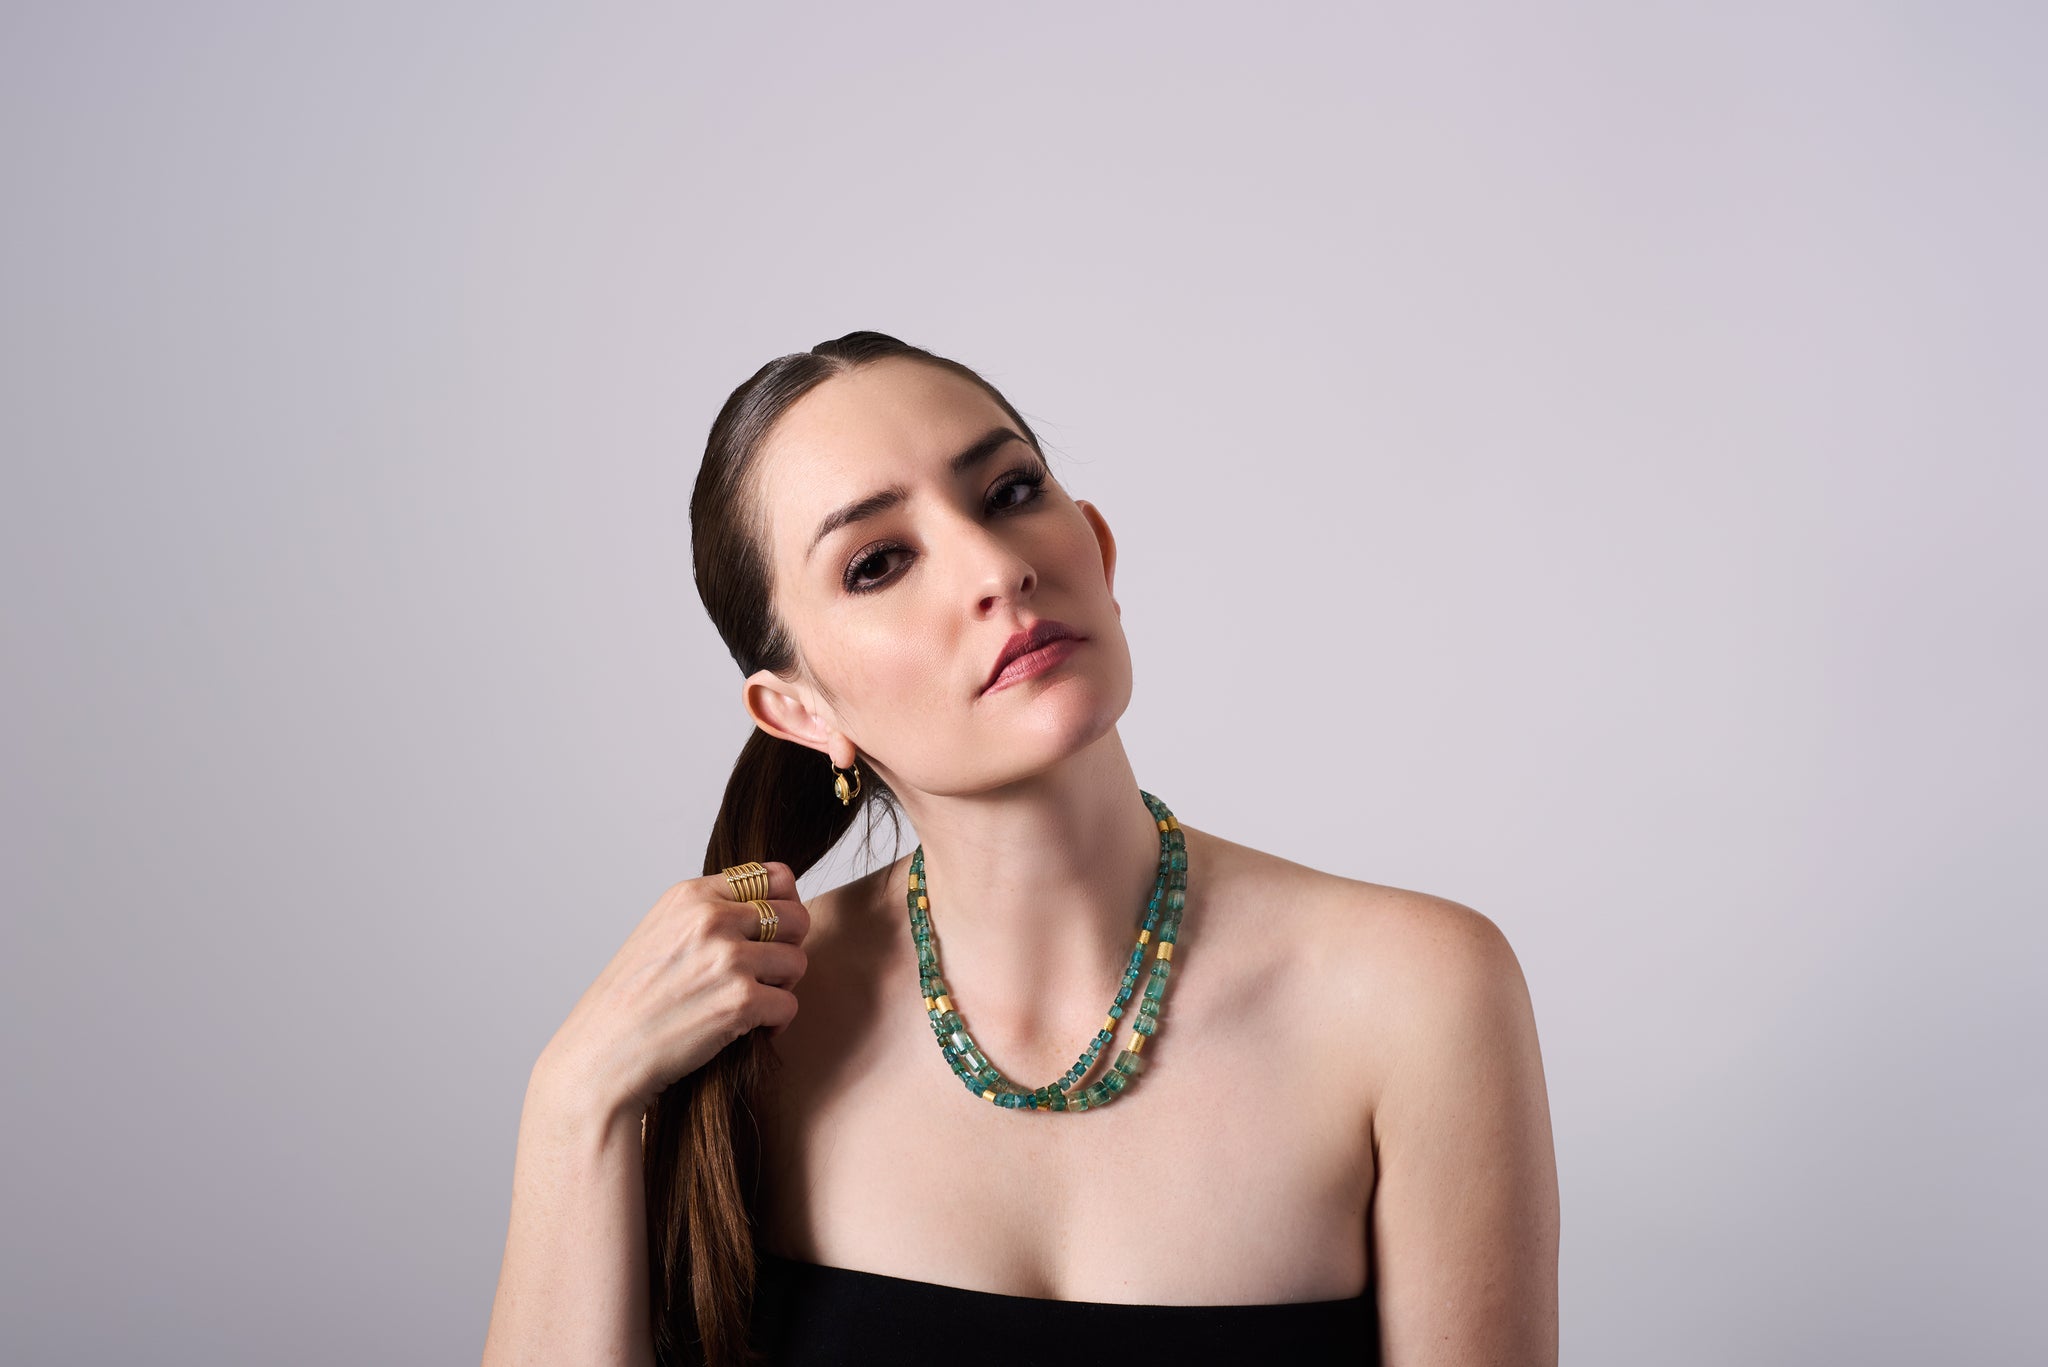 Bi-Colored Tourmaline Bead Necklace